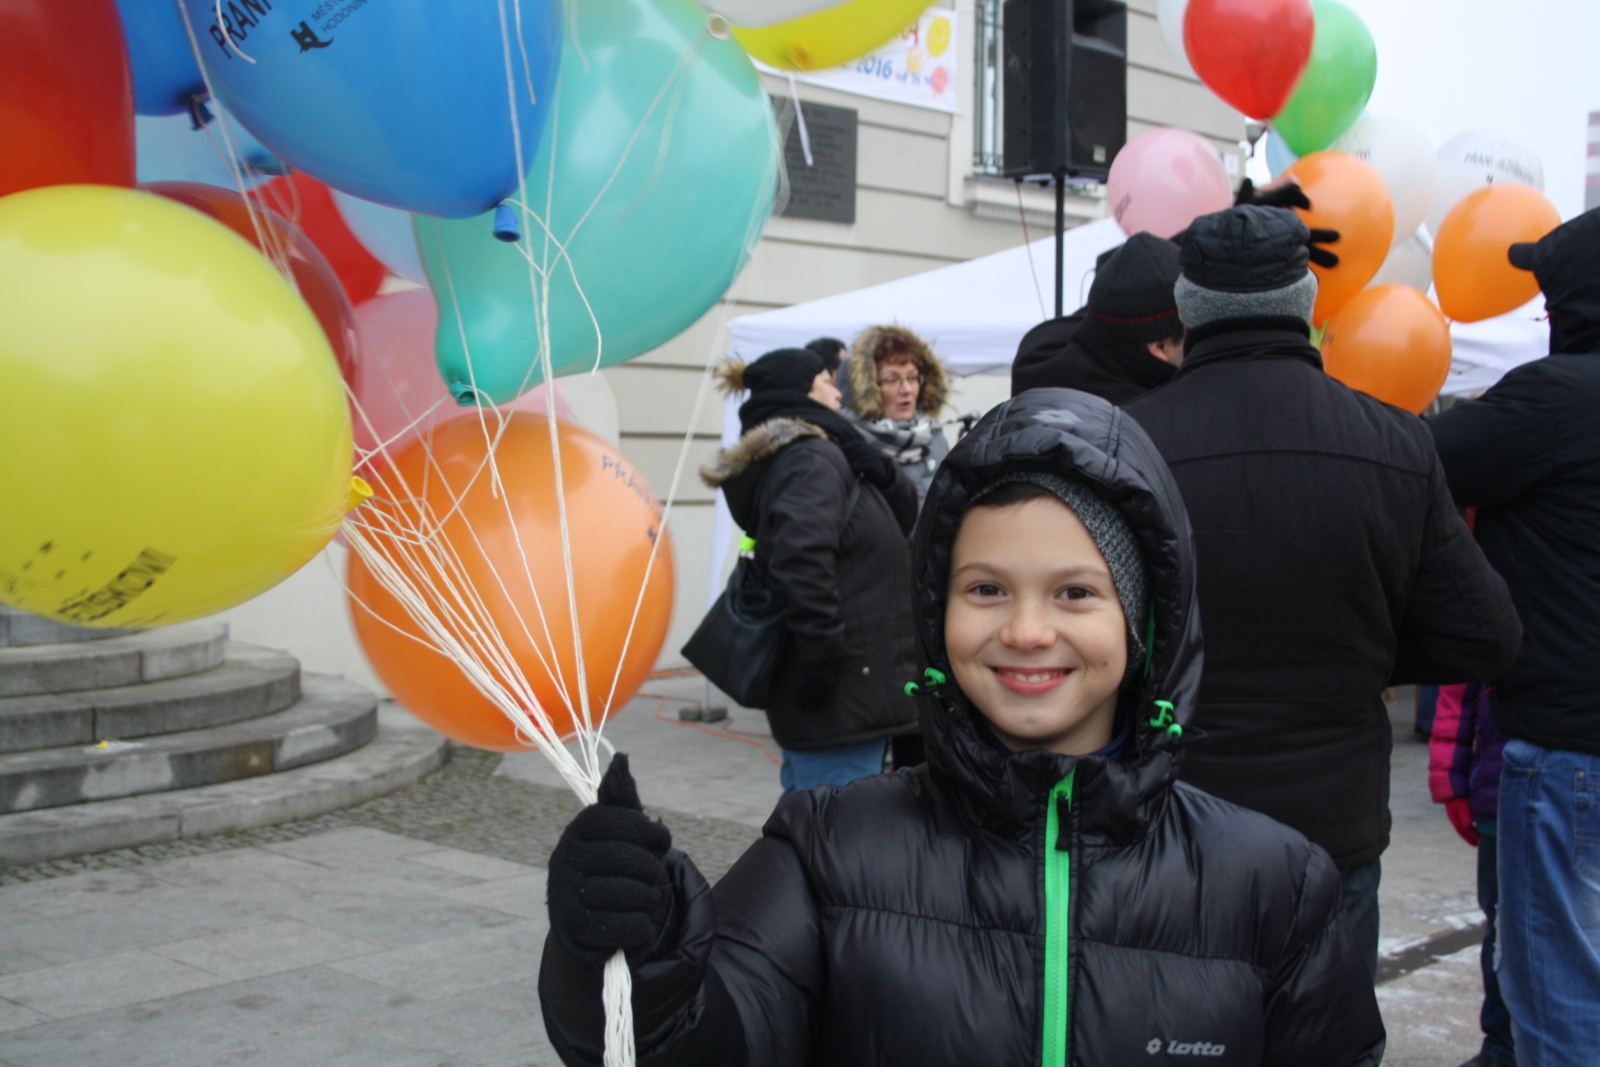 OBRAZEM: Děti vyslaly balonky s přáními pro Ježíška - Hodonínský deník